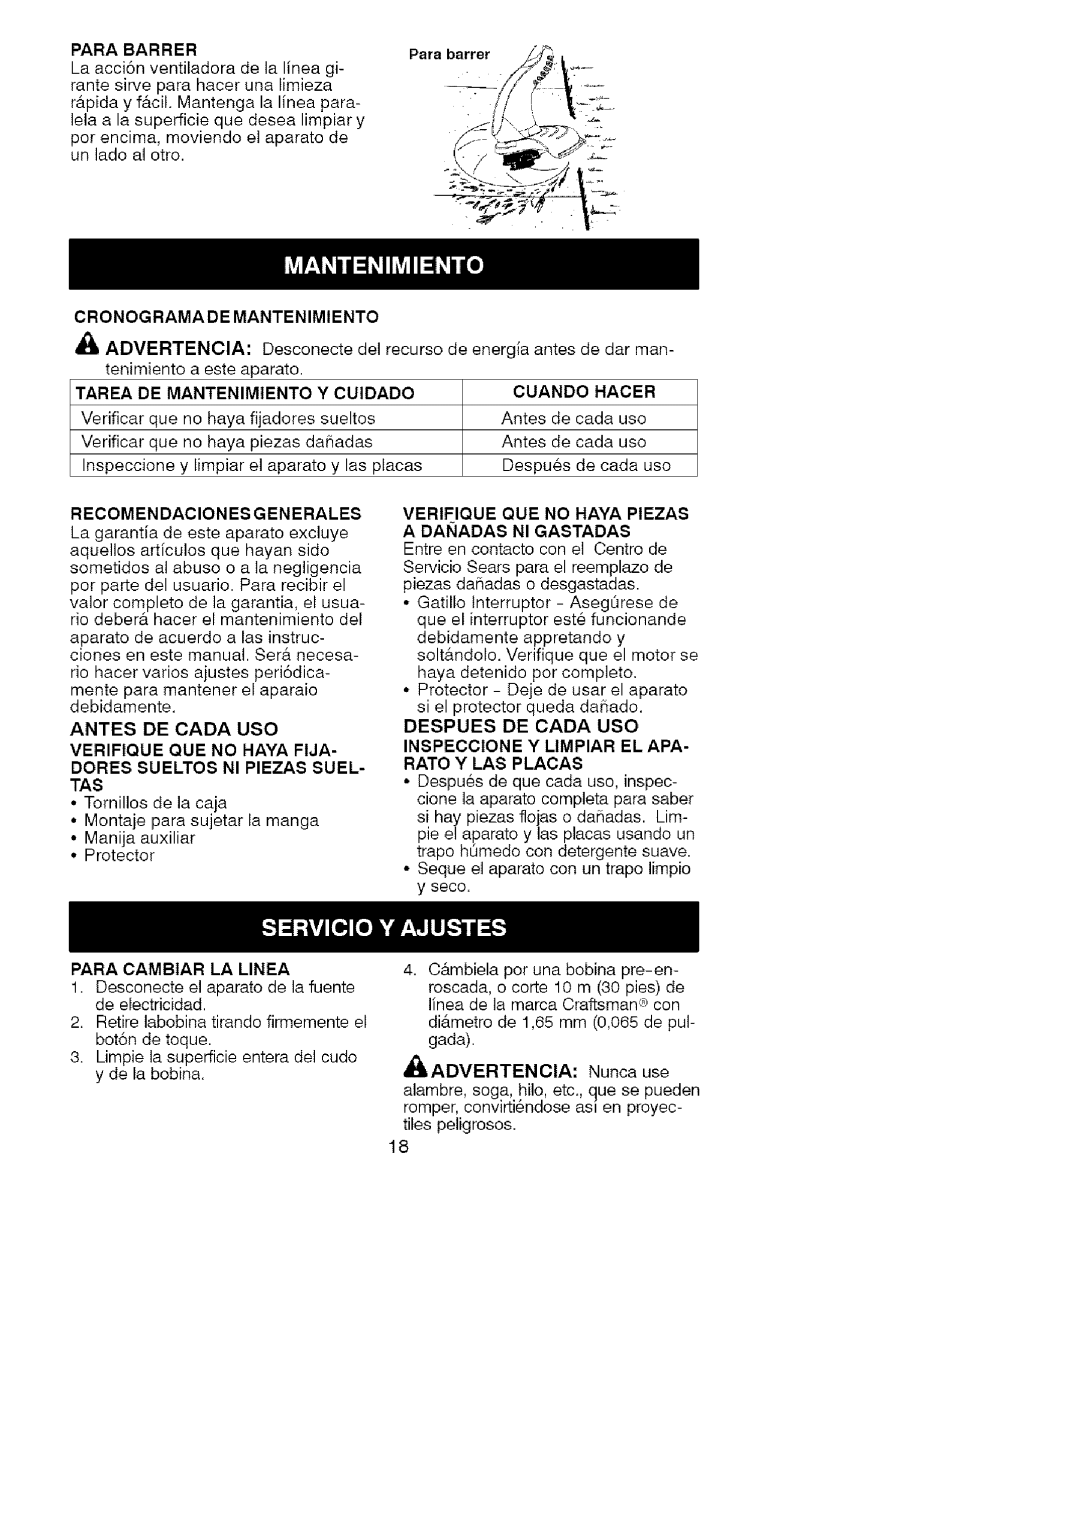 Craftsman 358.74534 manual Cronograma De Mantenimiento, Para barrer ./W, Advertencia, Hacer, Recomendaciones Generales 